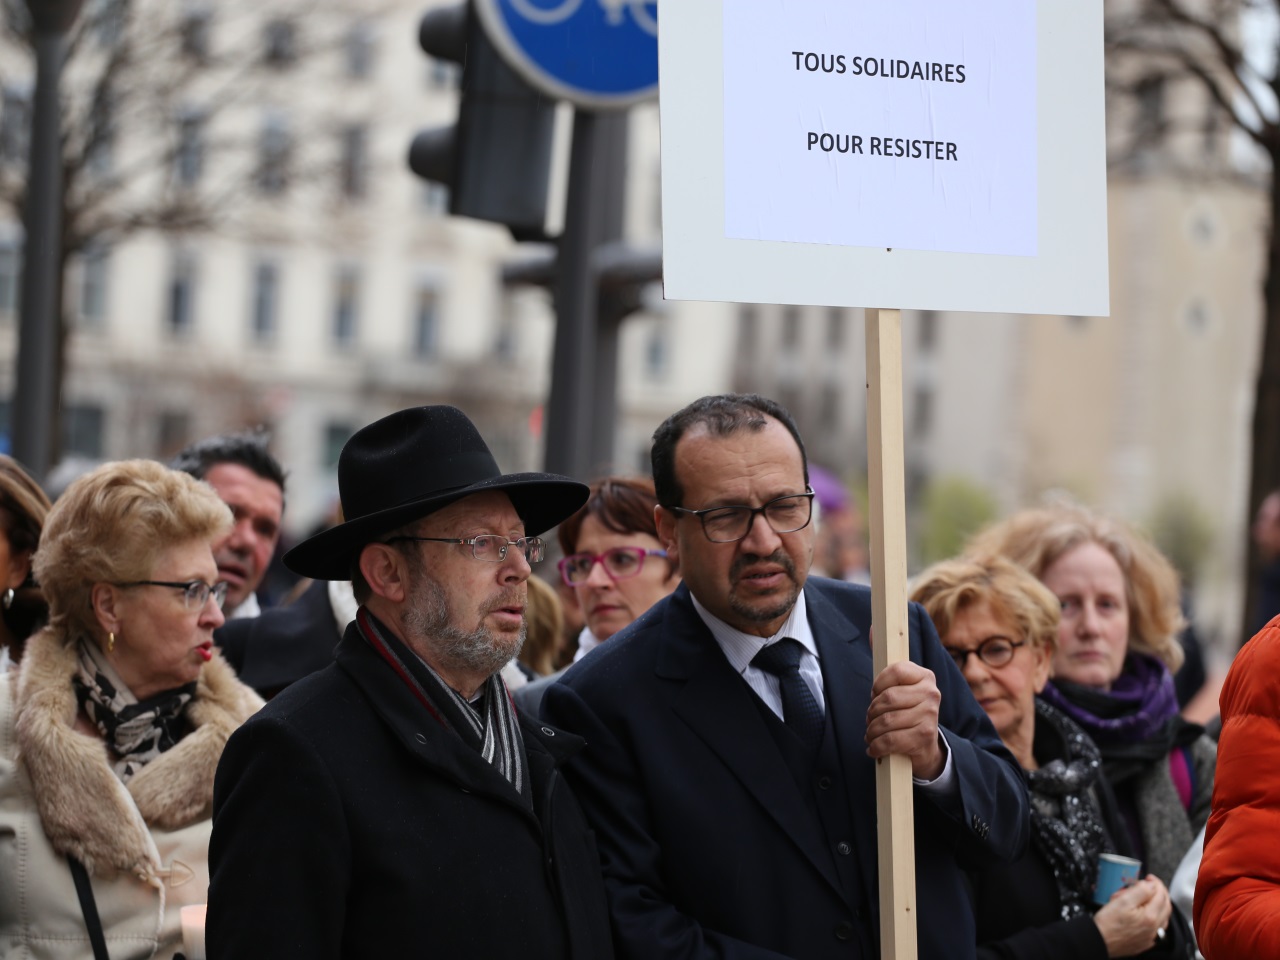 Les représentants juifs, Richard Wertenschlag, et musulmans, Benaïssa Chana, présents en tête de cortège - LyonMag